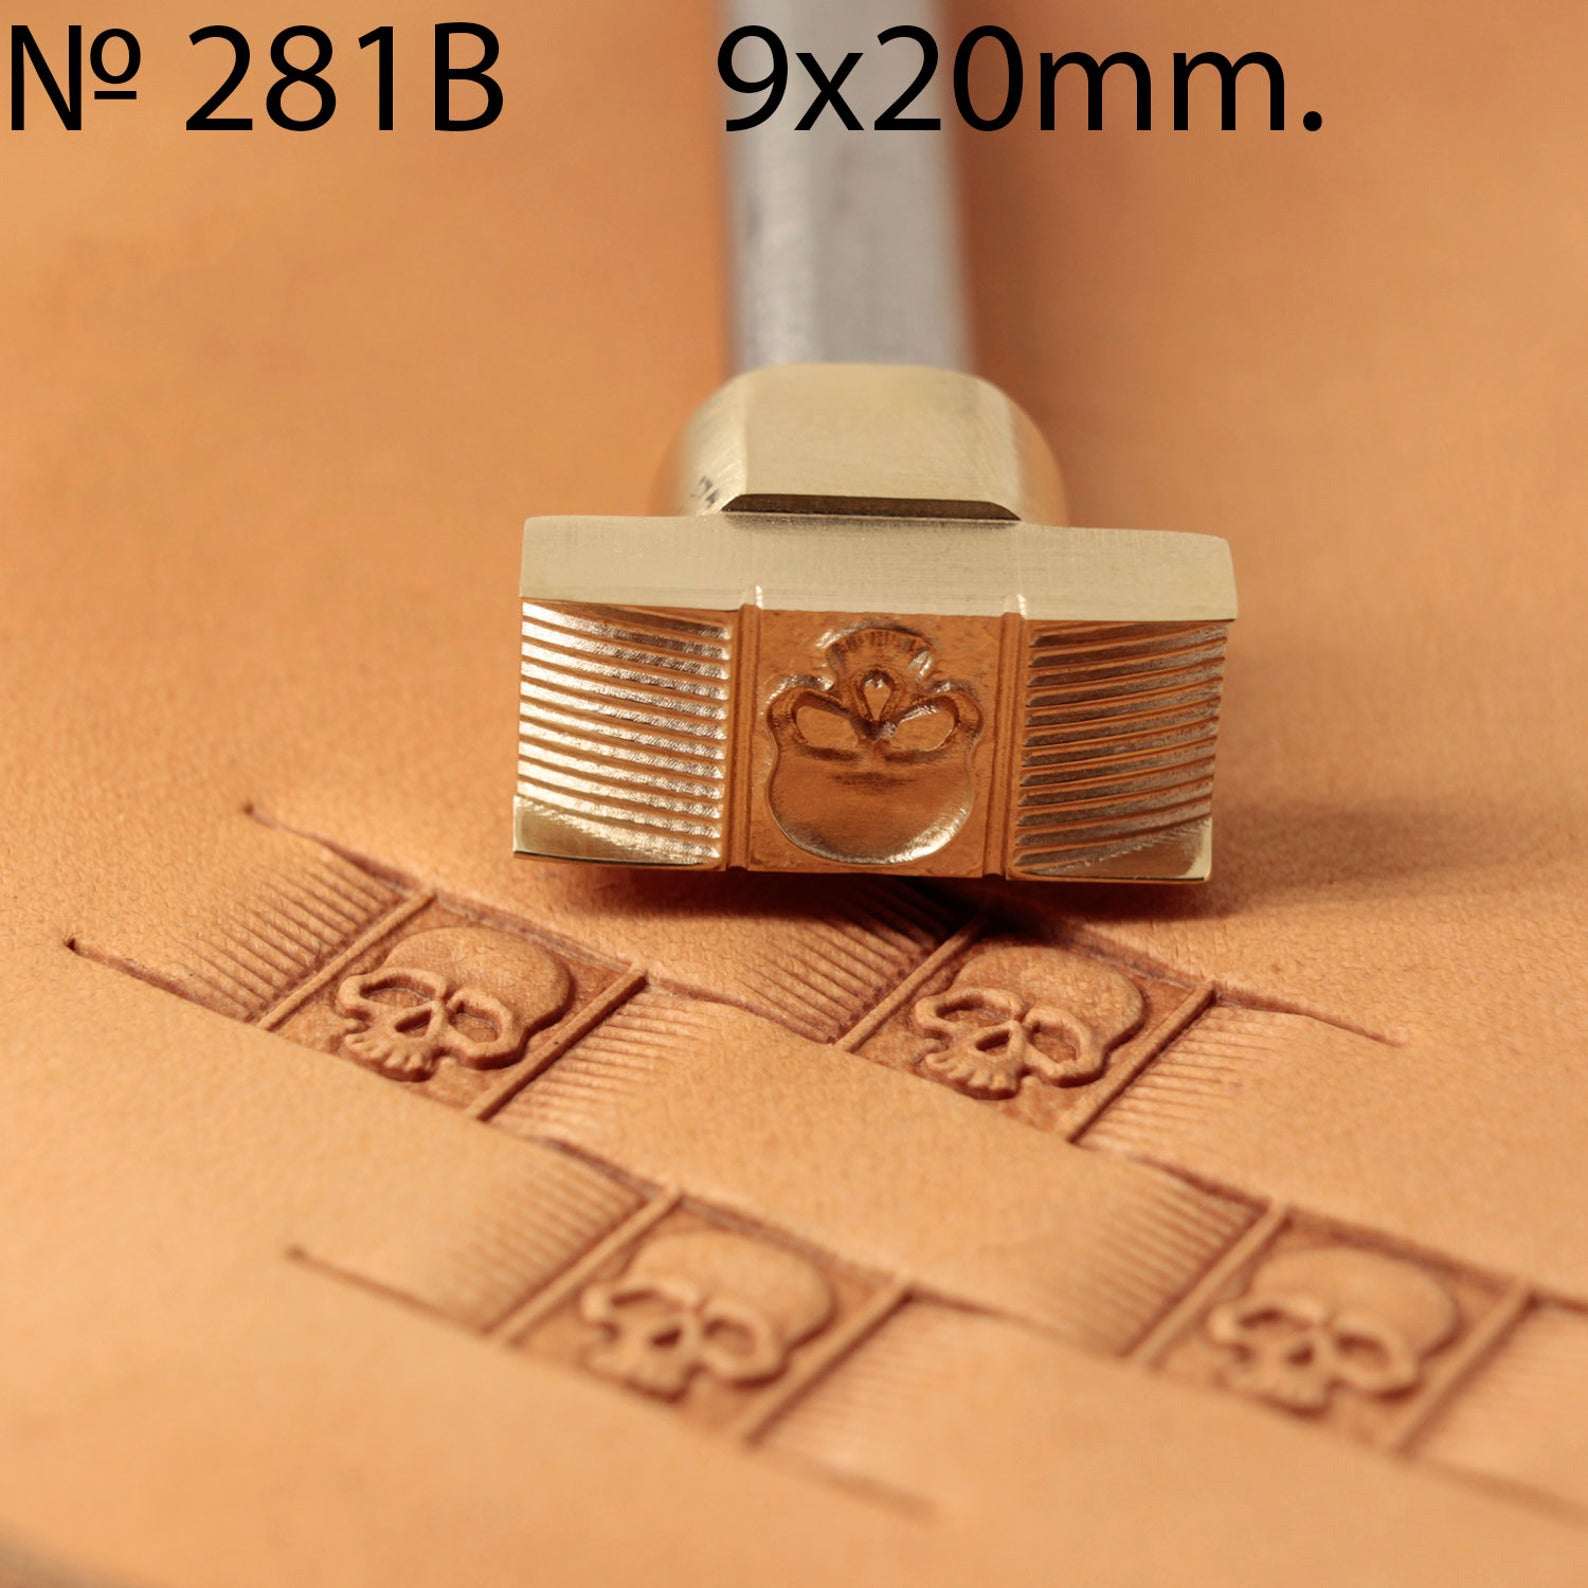 Leather stamp tool #281B - SpasGoranov